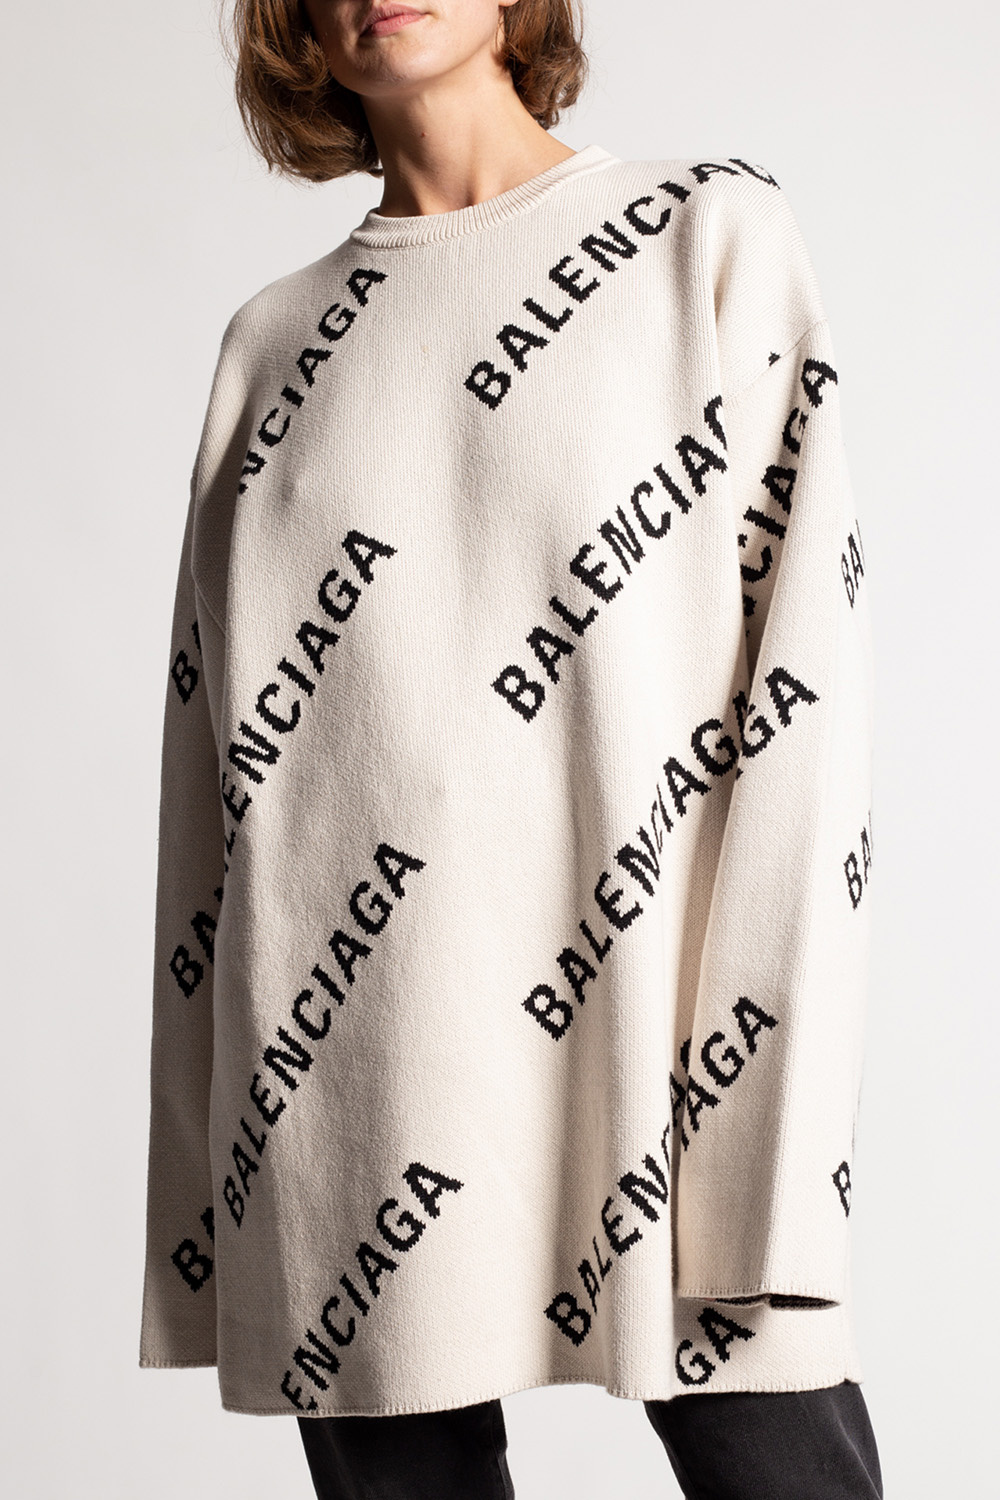 sweater Intakt i morgen Scarves / shawls Balenciaga - IetpShops GB